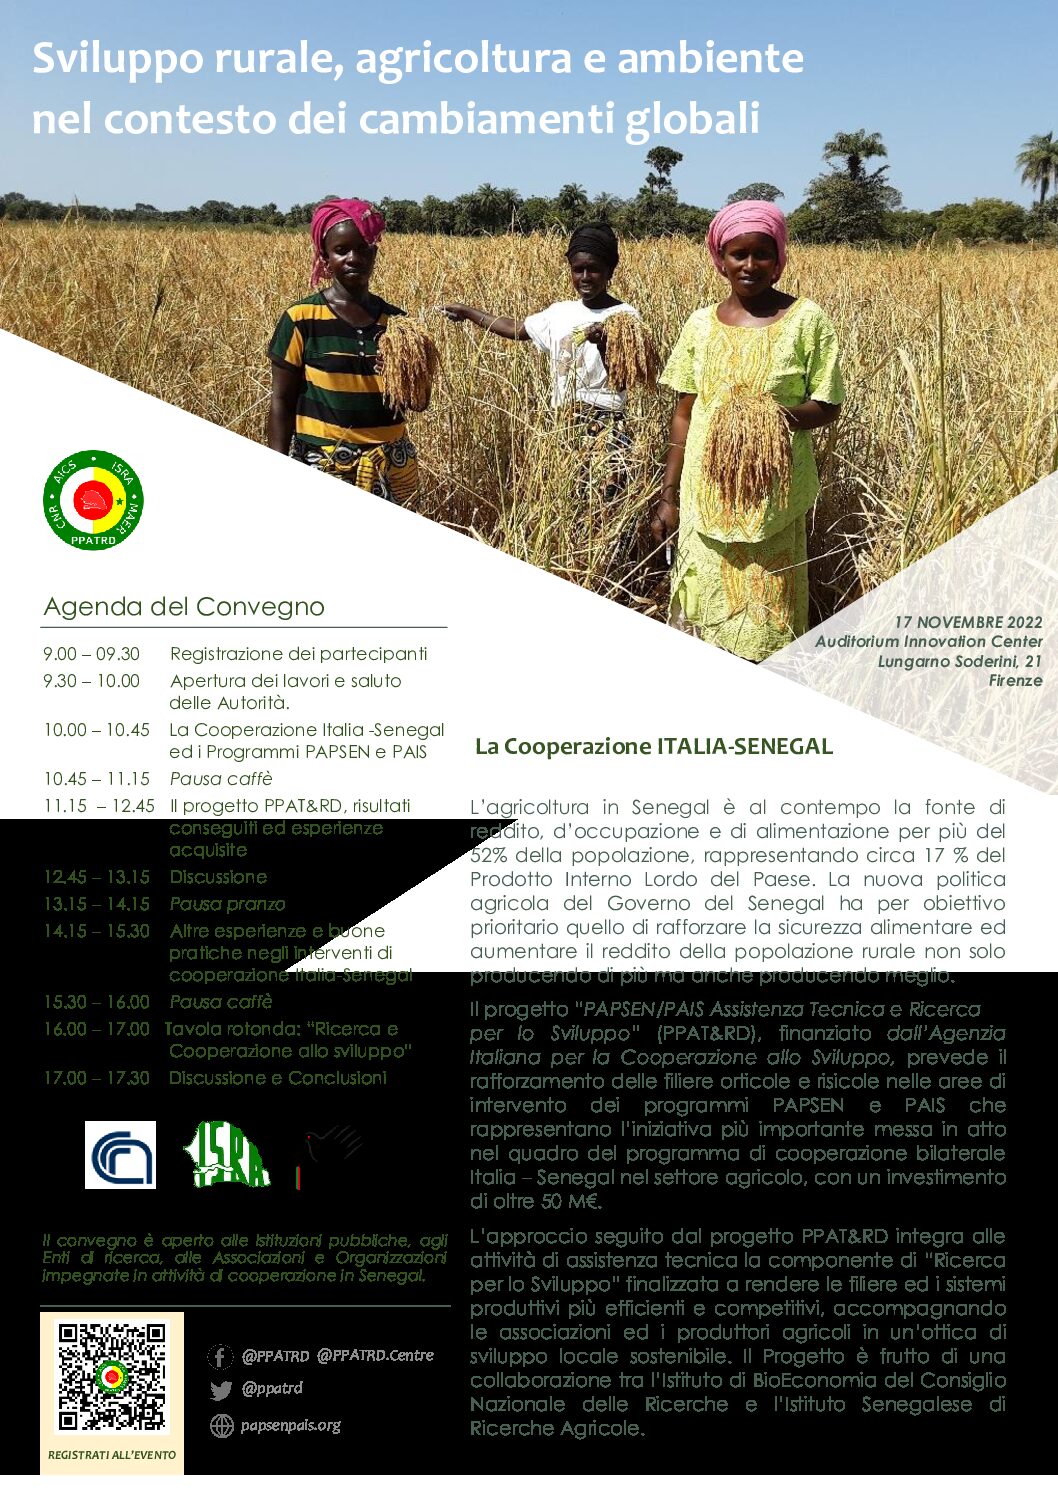 CNR: giovedì 17 novembre a FIRENZE, l’Istituto per la BioEconomia (Ibe) del Cnr organizza il convegno Sviluppo rurale, agricoltura e ambiente